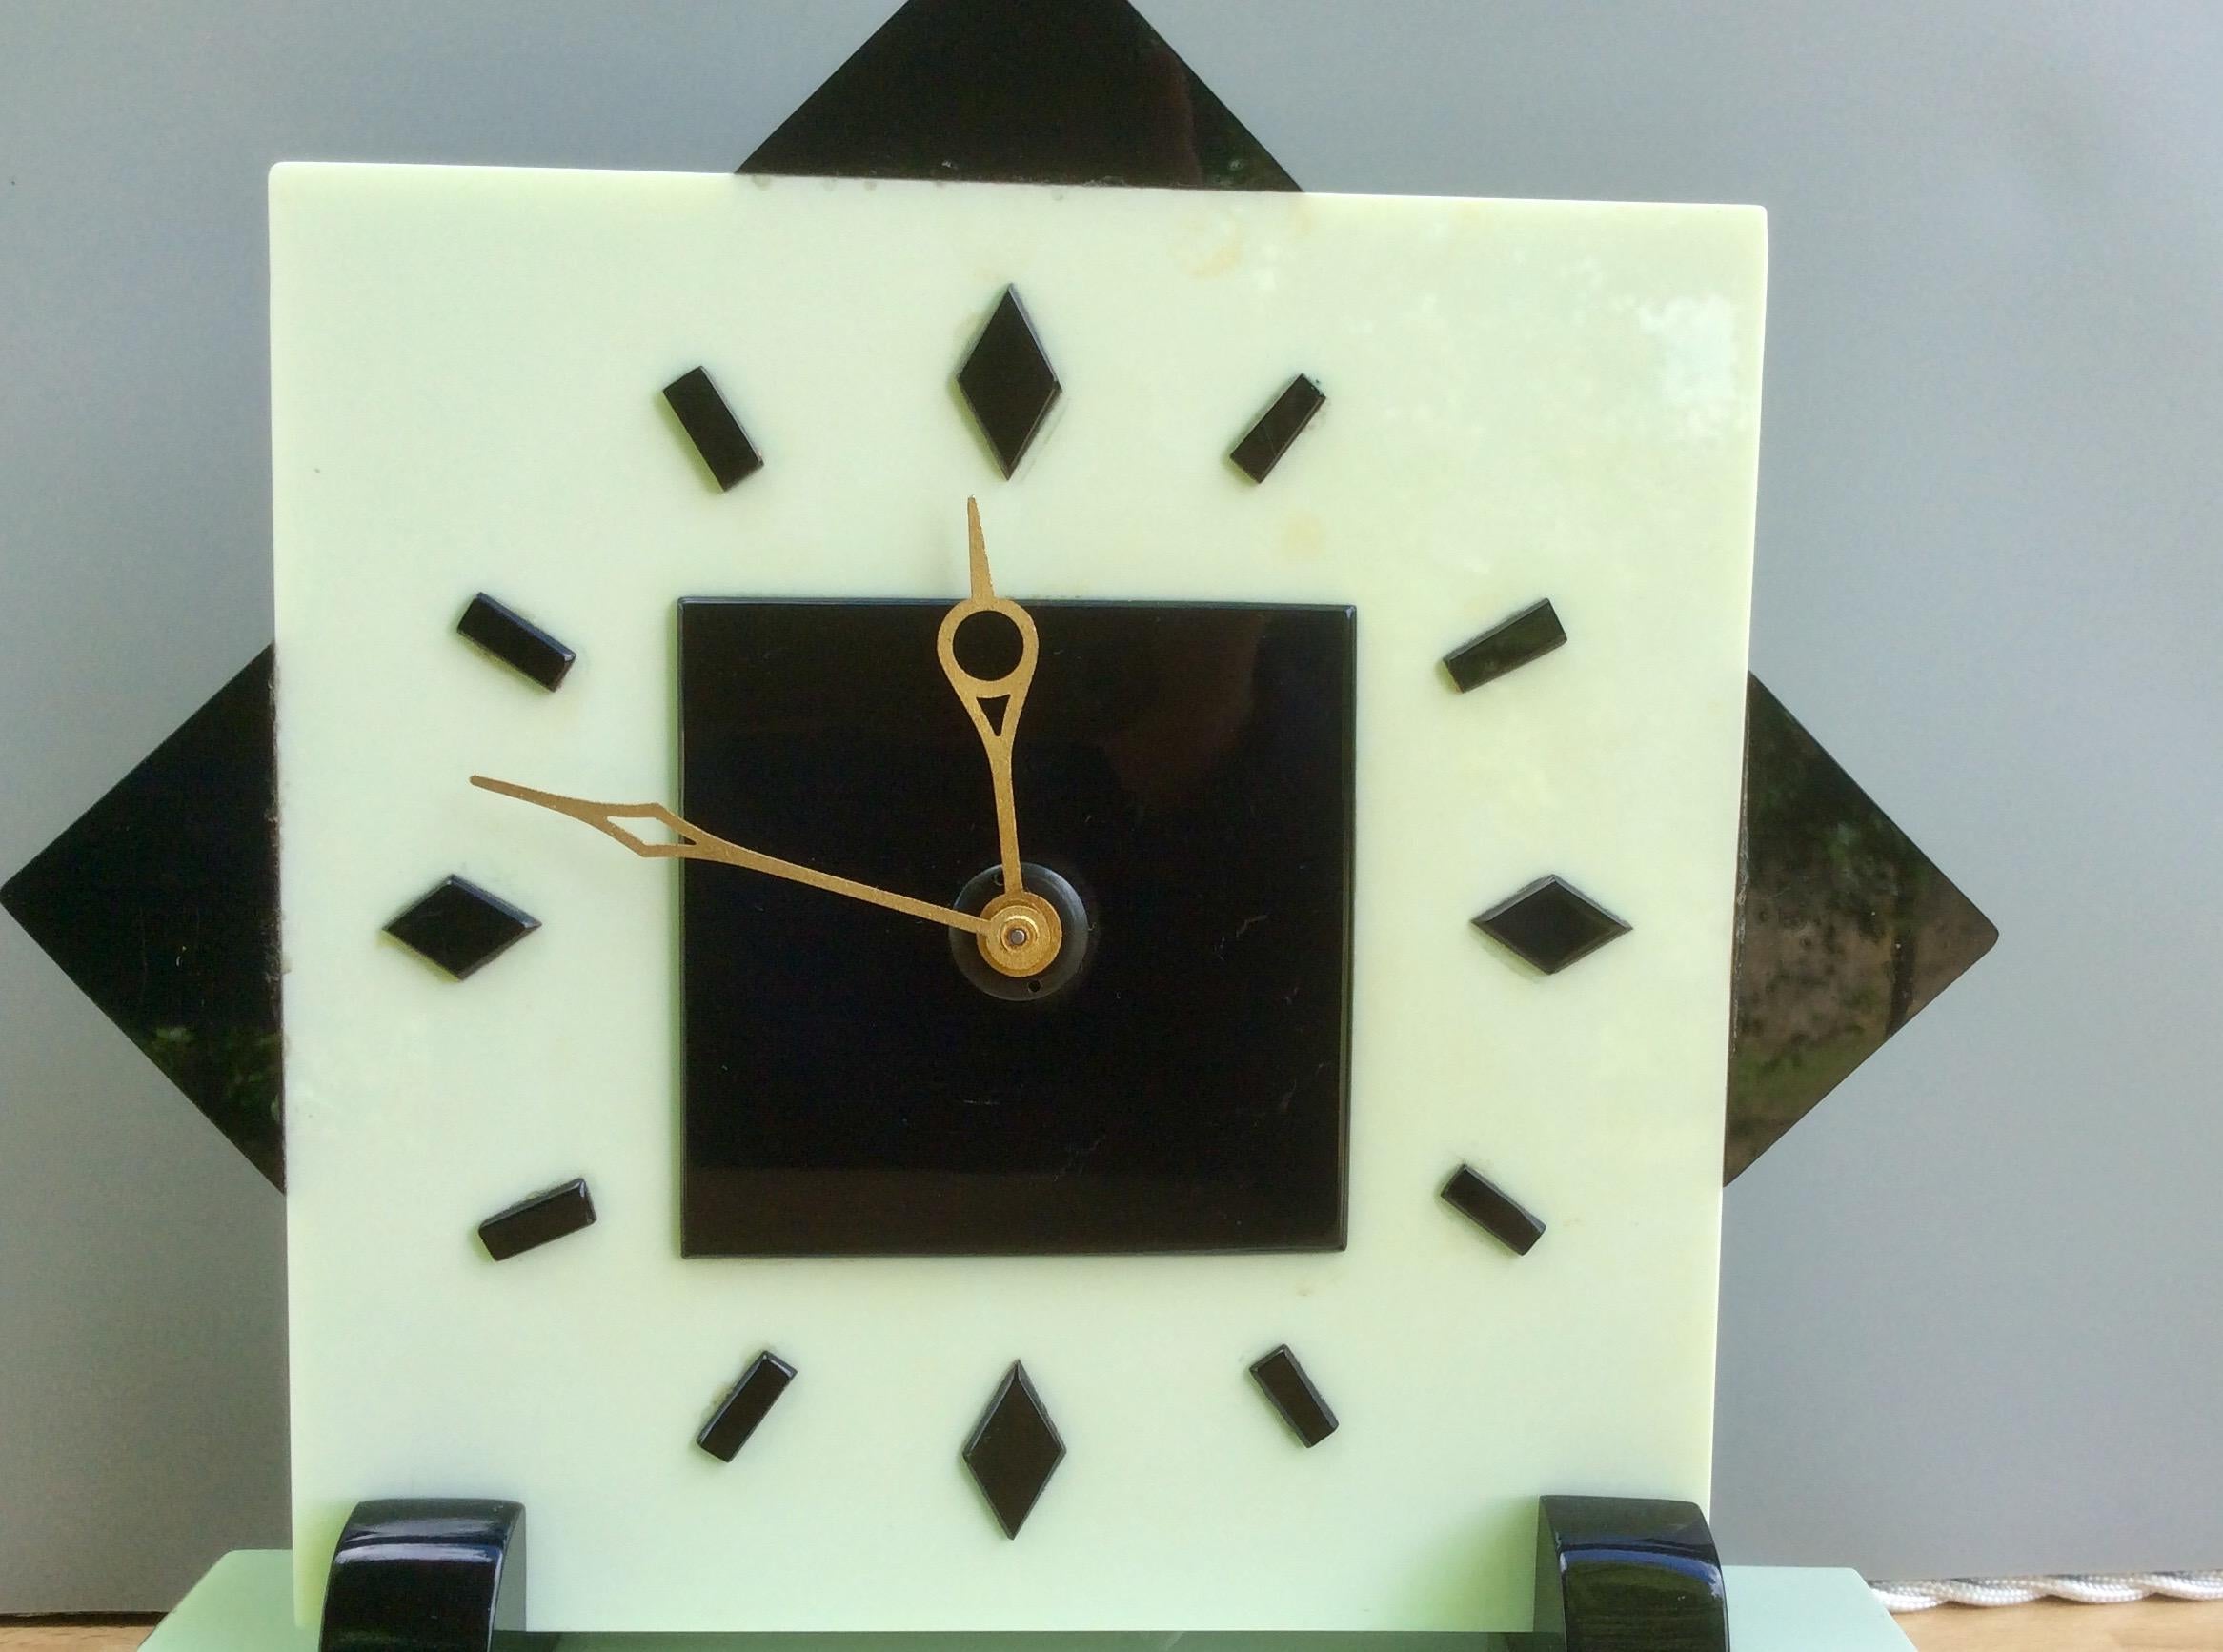 Art-Déco-Uhr

Elektrischer Zeitmesser im Art-Deco-Stil in einem hellgrünen und schwarzen Bakelit-Gehäuse, das auf rechteckigen Füßen steht und auf einem abgestuften zweifarbigen Sockel ruht.

Quadratisches Zifferblatt mit Stabindexen und